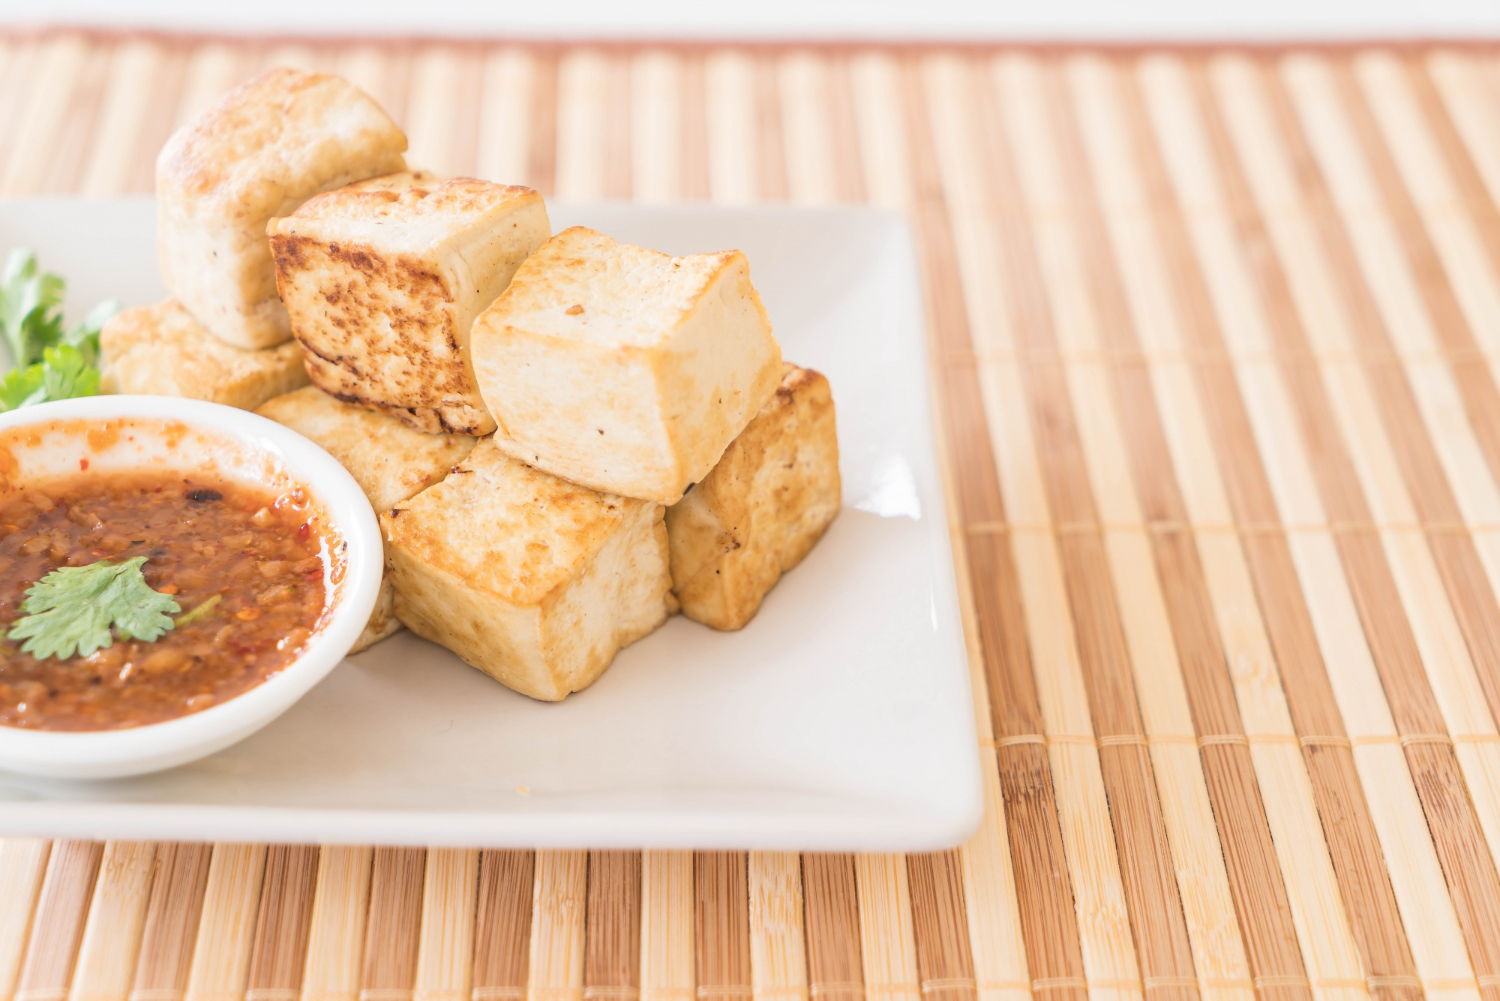 PRZEPIS: Tofu stir-fry z warzywami, sosem sojowym i quinoa [520 kcal, 22g białka]